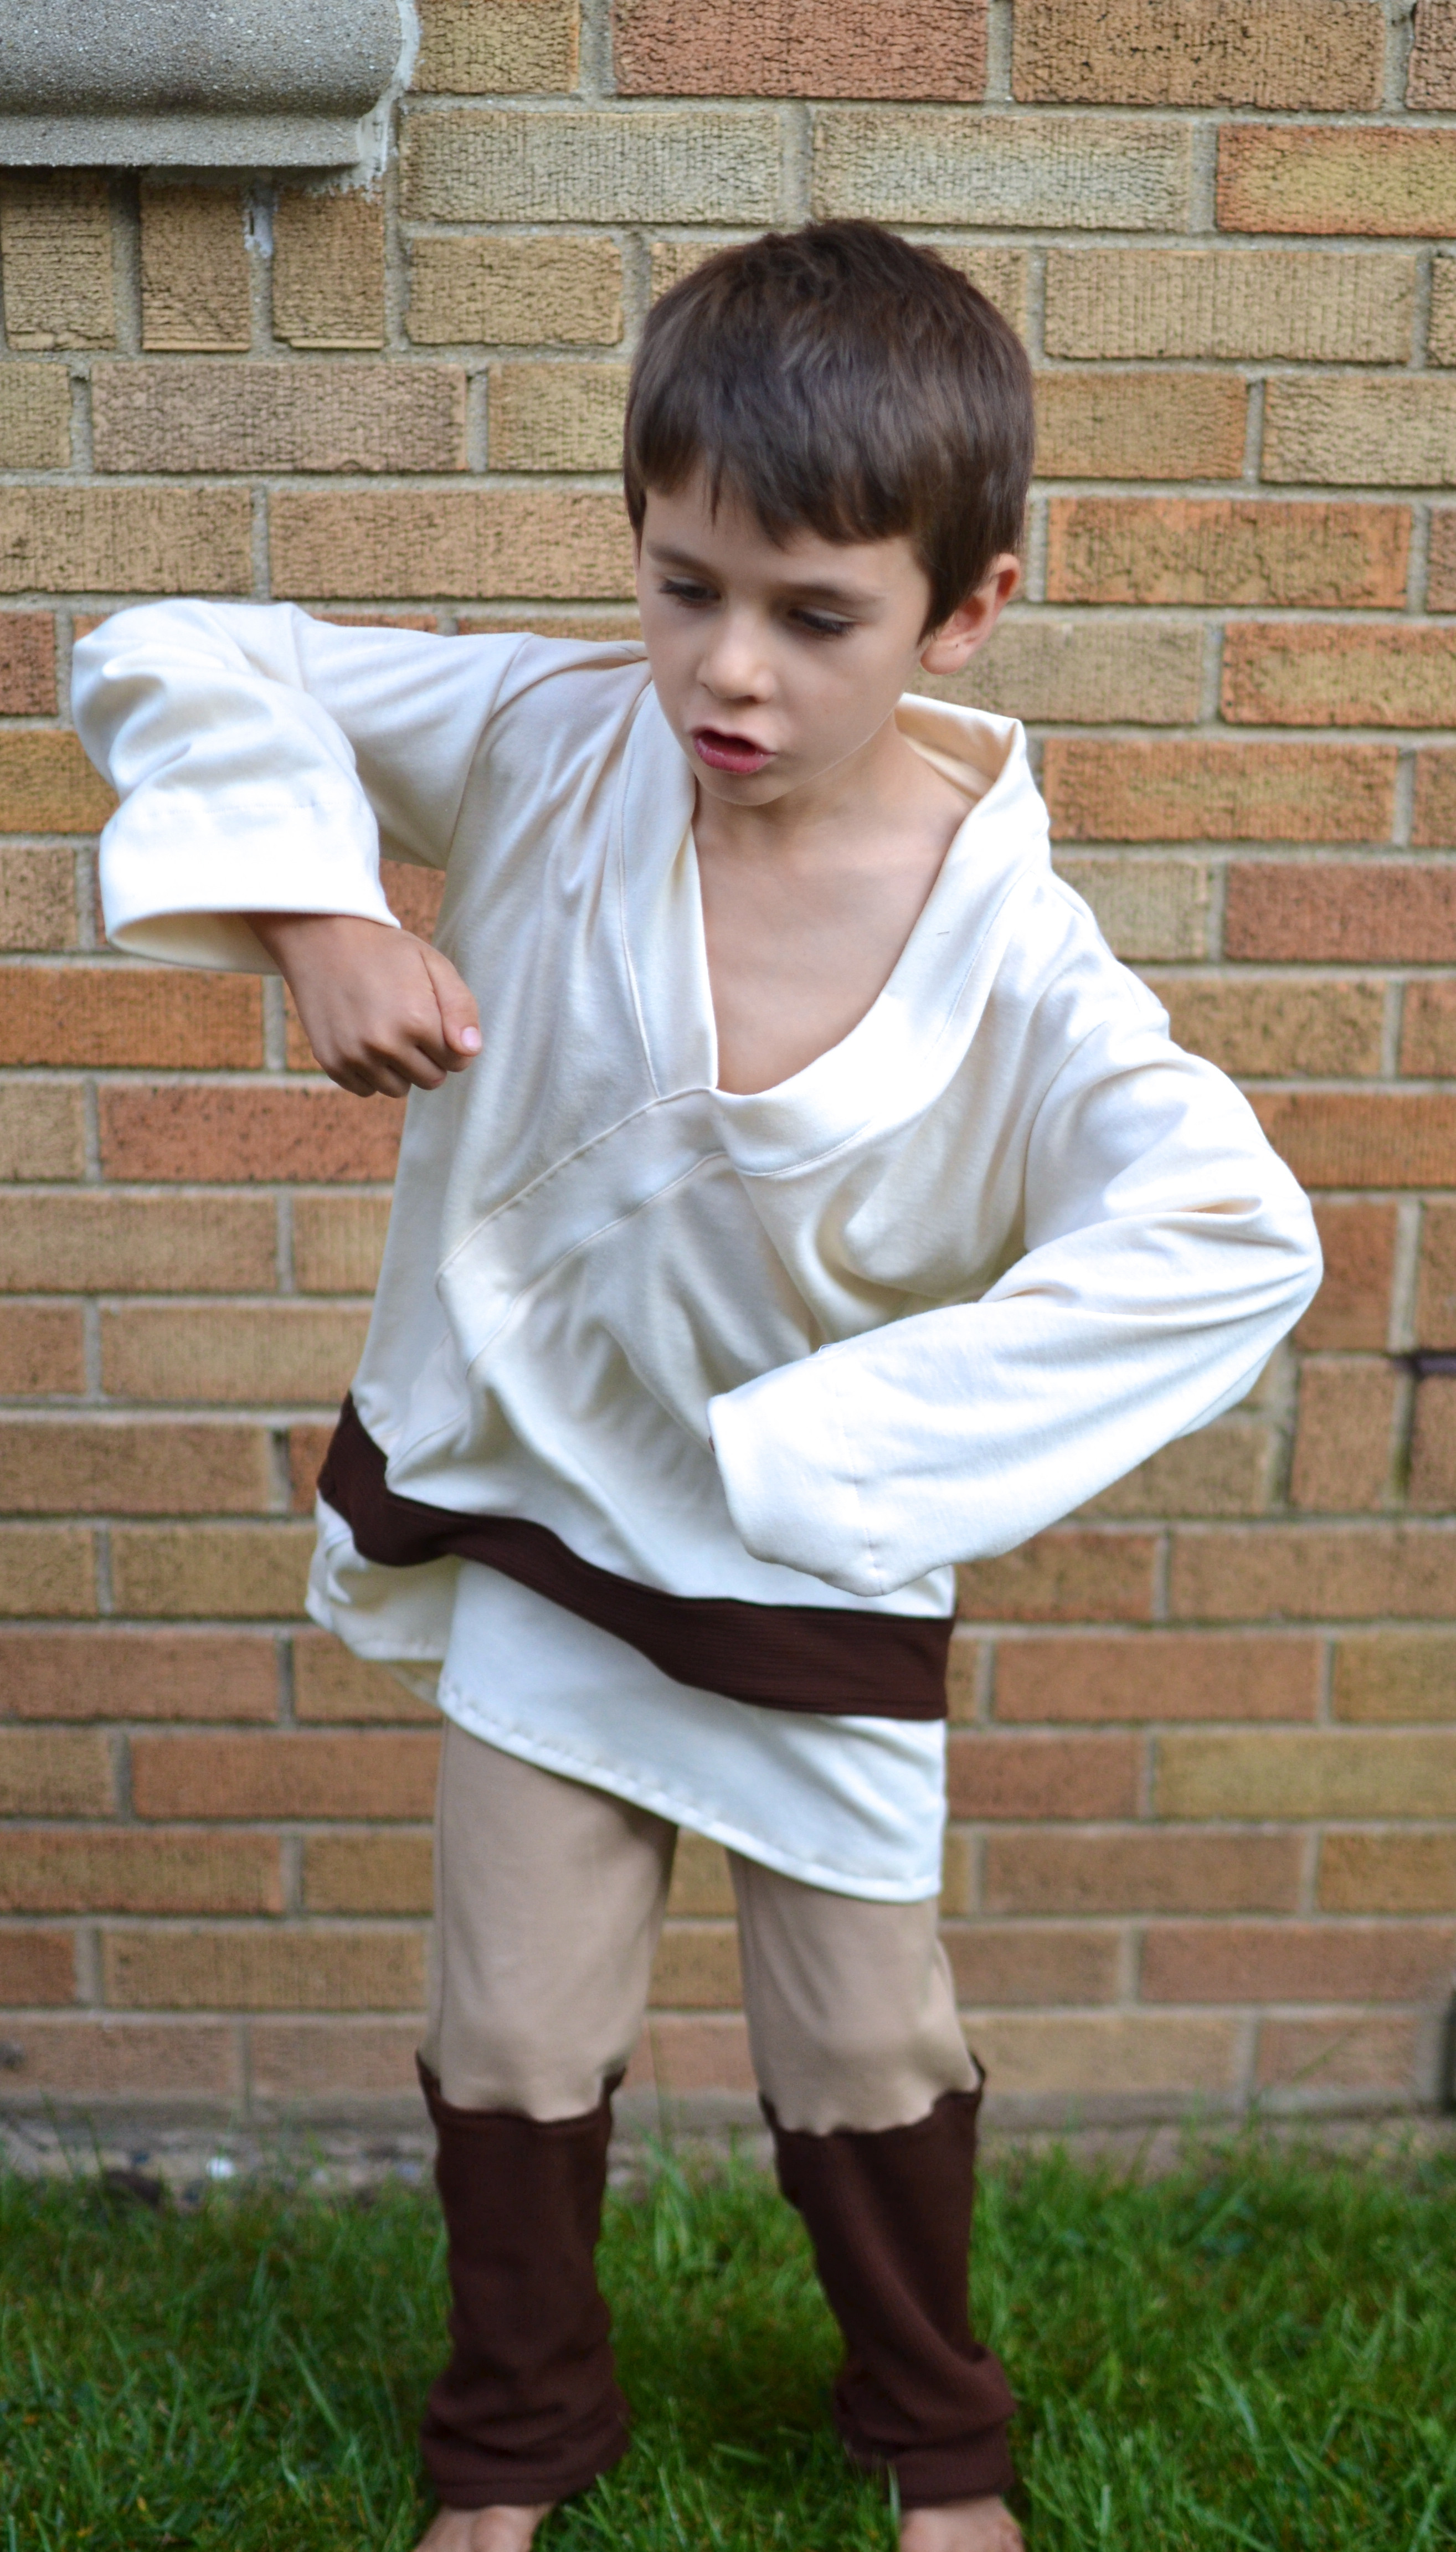 Best ideas about Luke Skywalker Costume DIY
. Save or Pin Luke Skywalker Costume Tutorial Now.